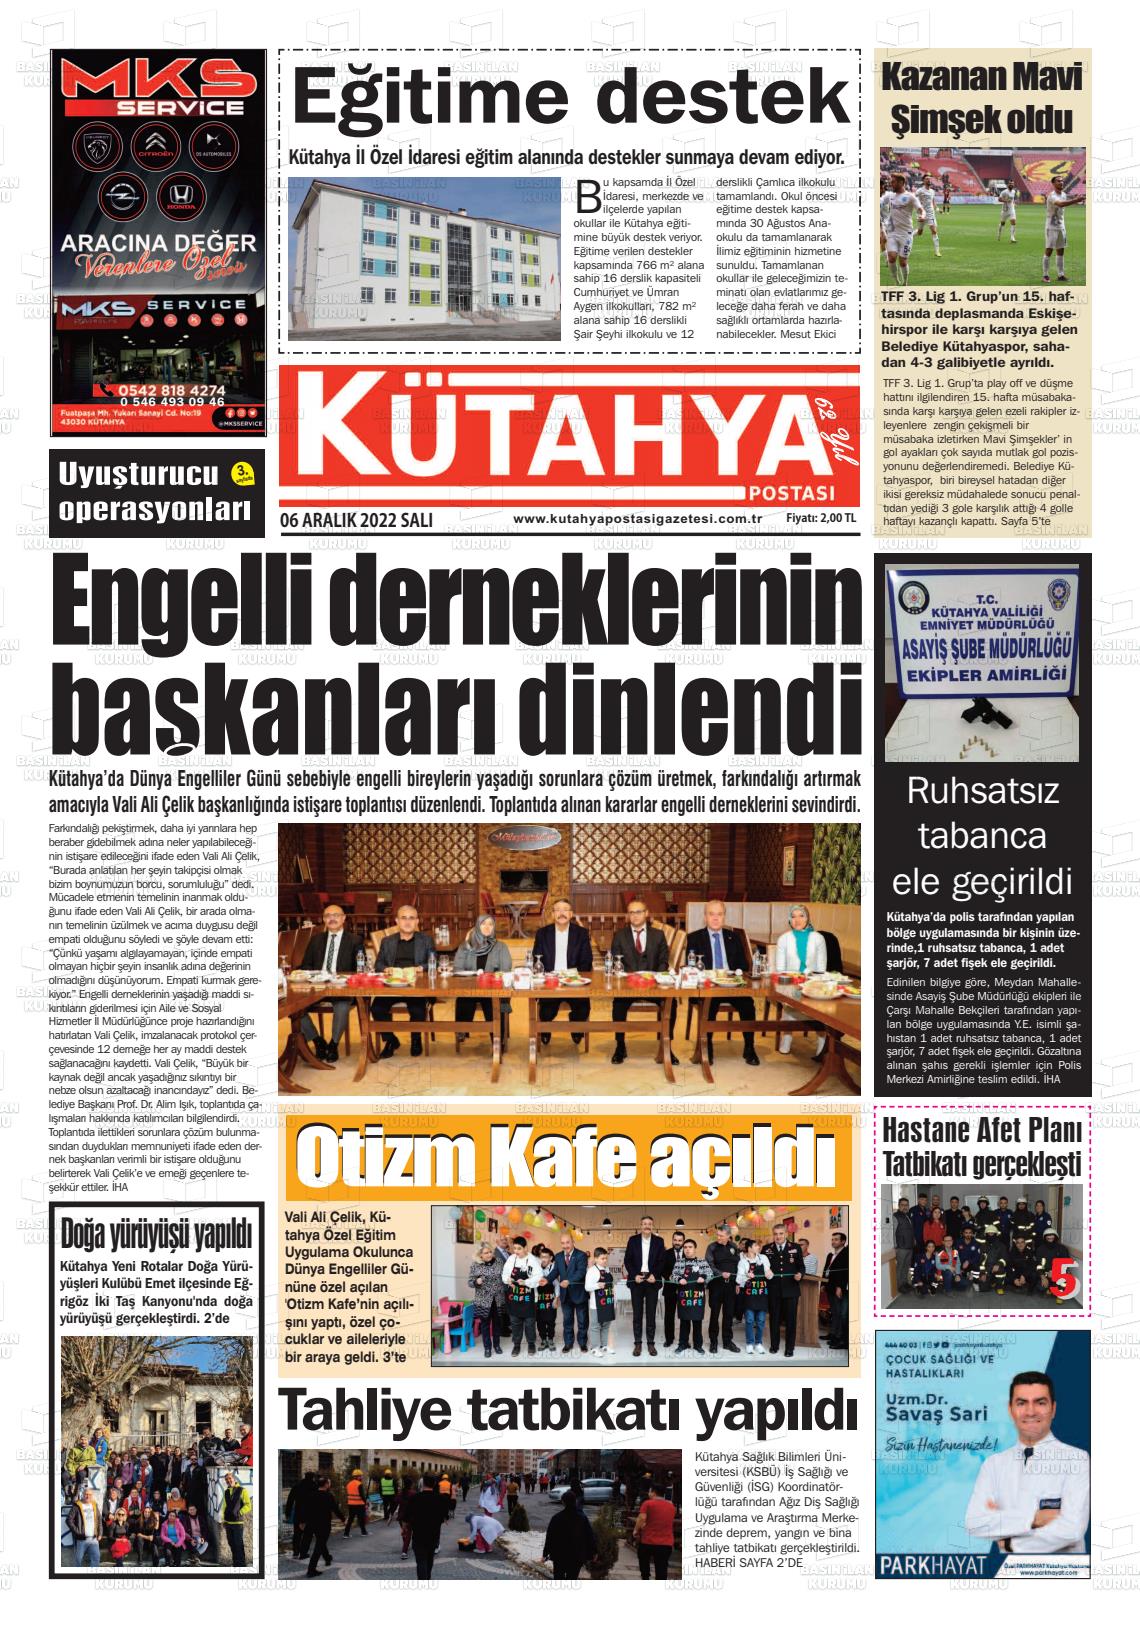 06 Aralık 2022 Kütahya Postası Gazete Manşeti